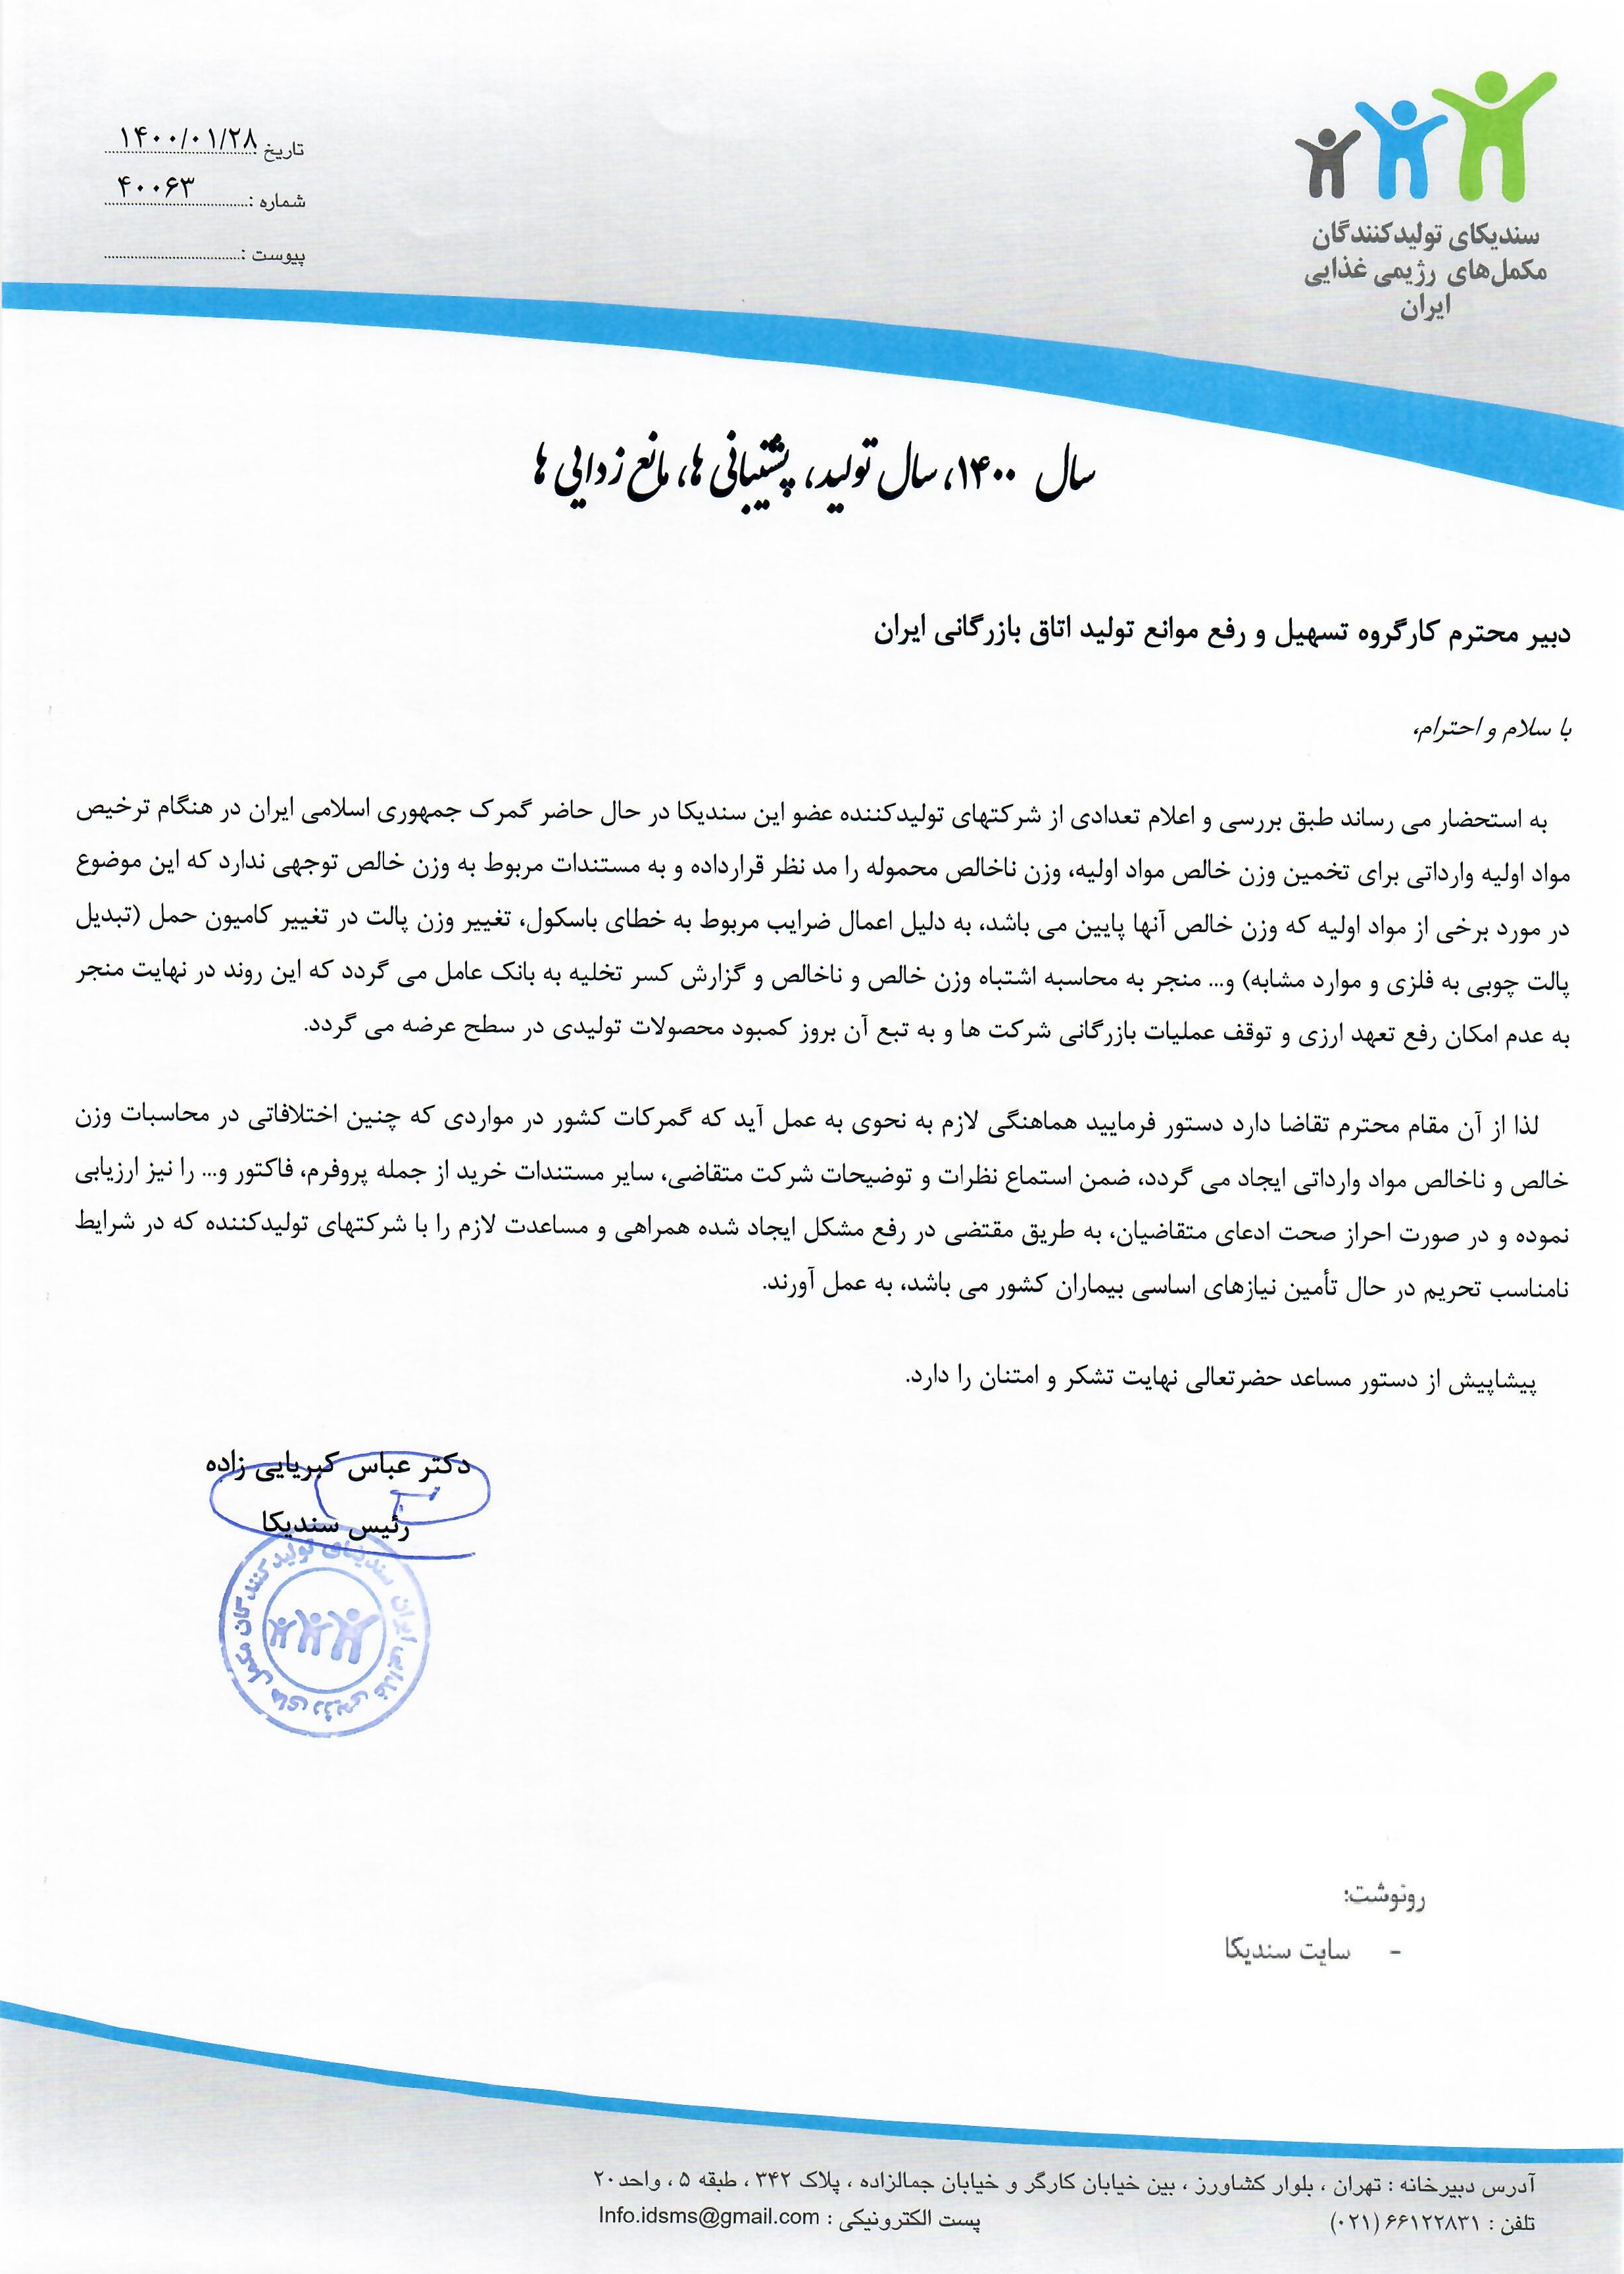 نامه به کارگروه تسهیل و رفع موانع تولید اتاق بازرگانی ایران در خصوص تخمین وزن خالص مواد اولیه در هنگام ترخیص مواد اولیه وارداتی